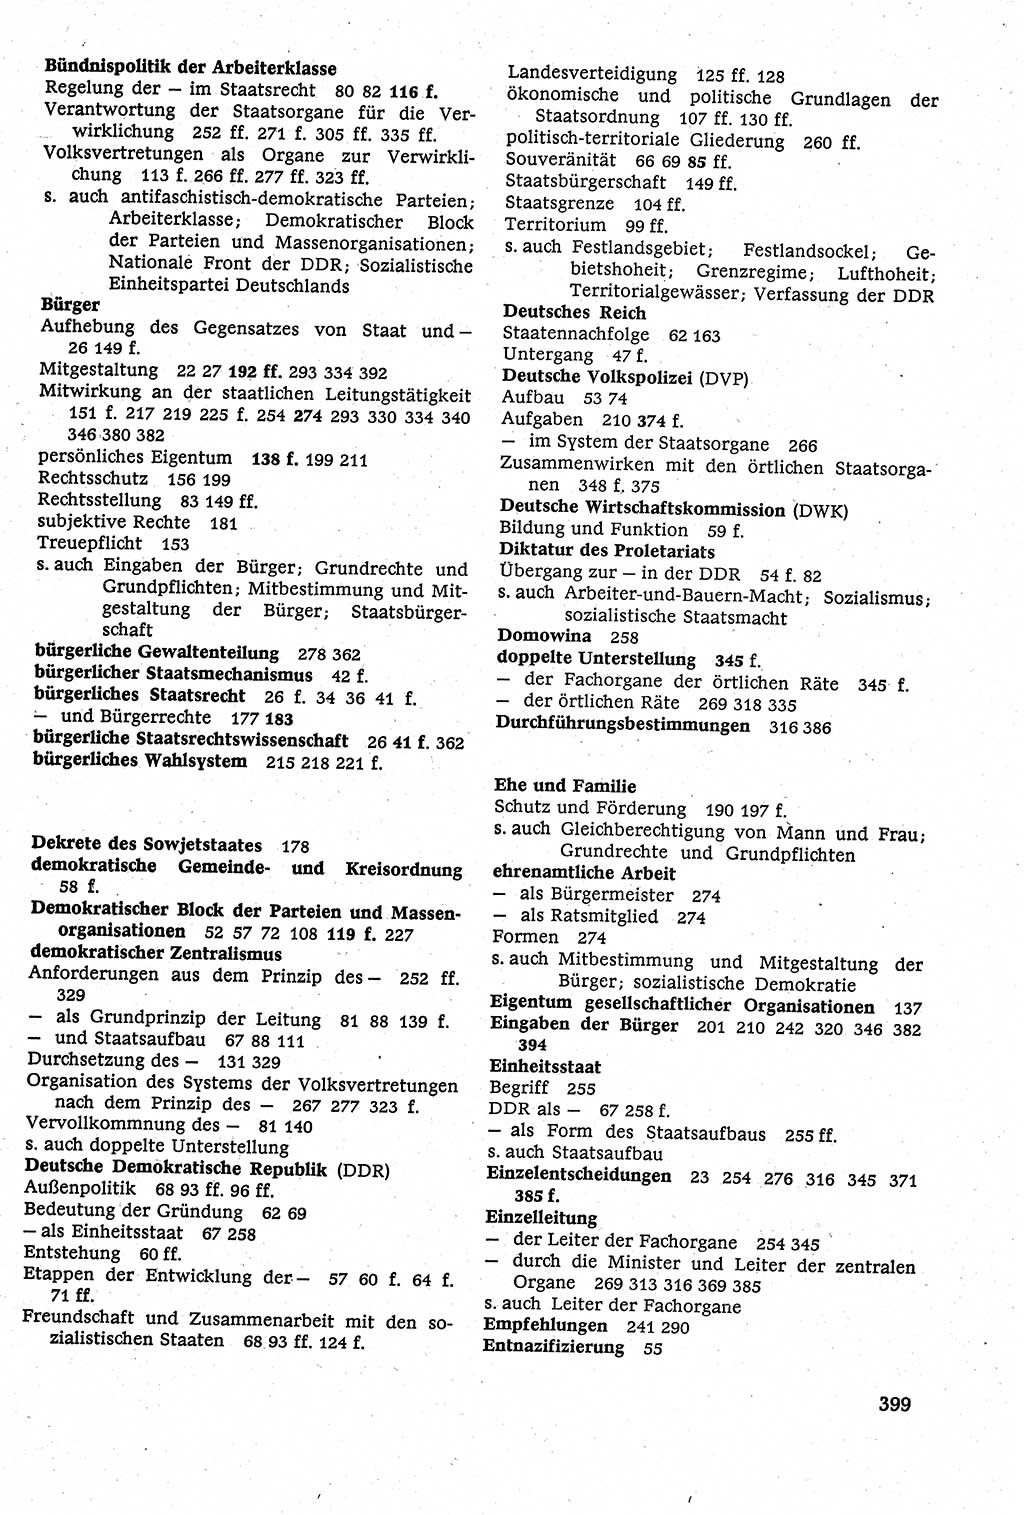 Staatsrecht der DDR [Deutsche Demokratische Republik (DDR)], Lehrbuch 1984, Seite 399 (St.-R. DDR Lb. 1984, S. 399)